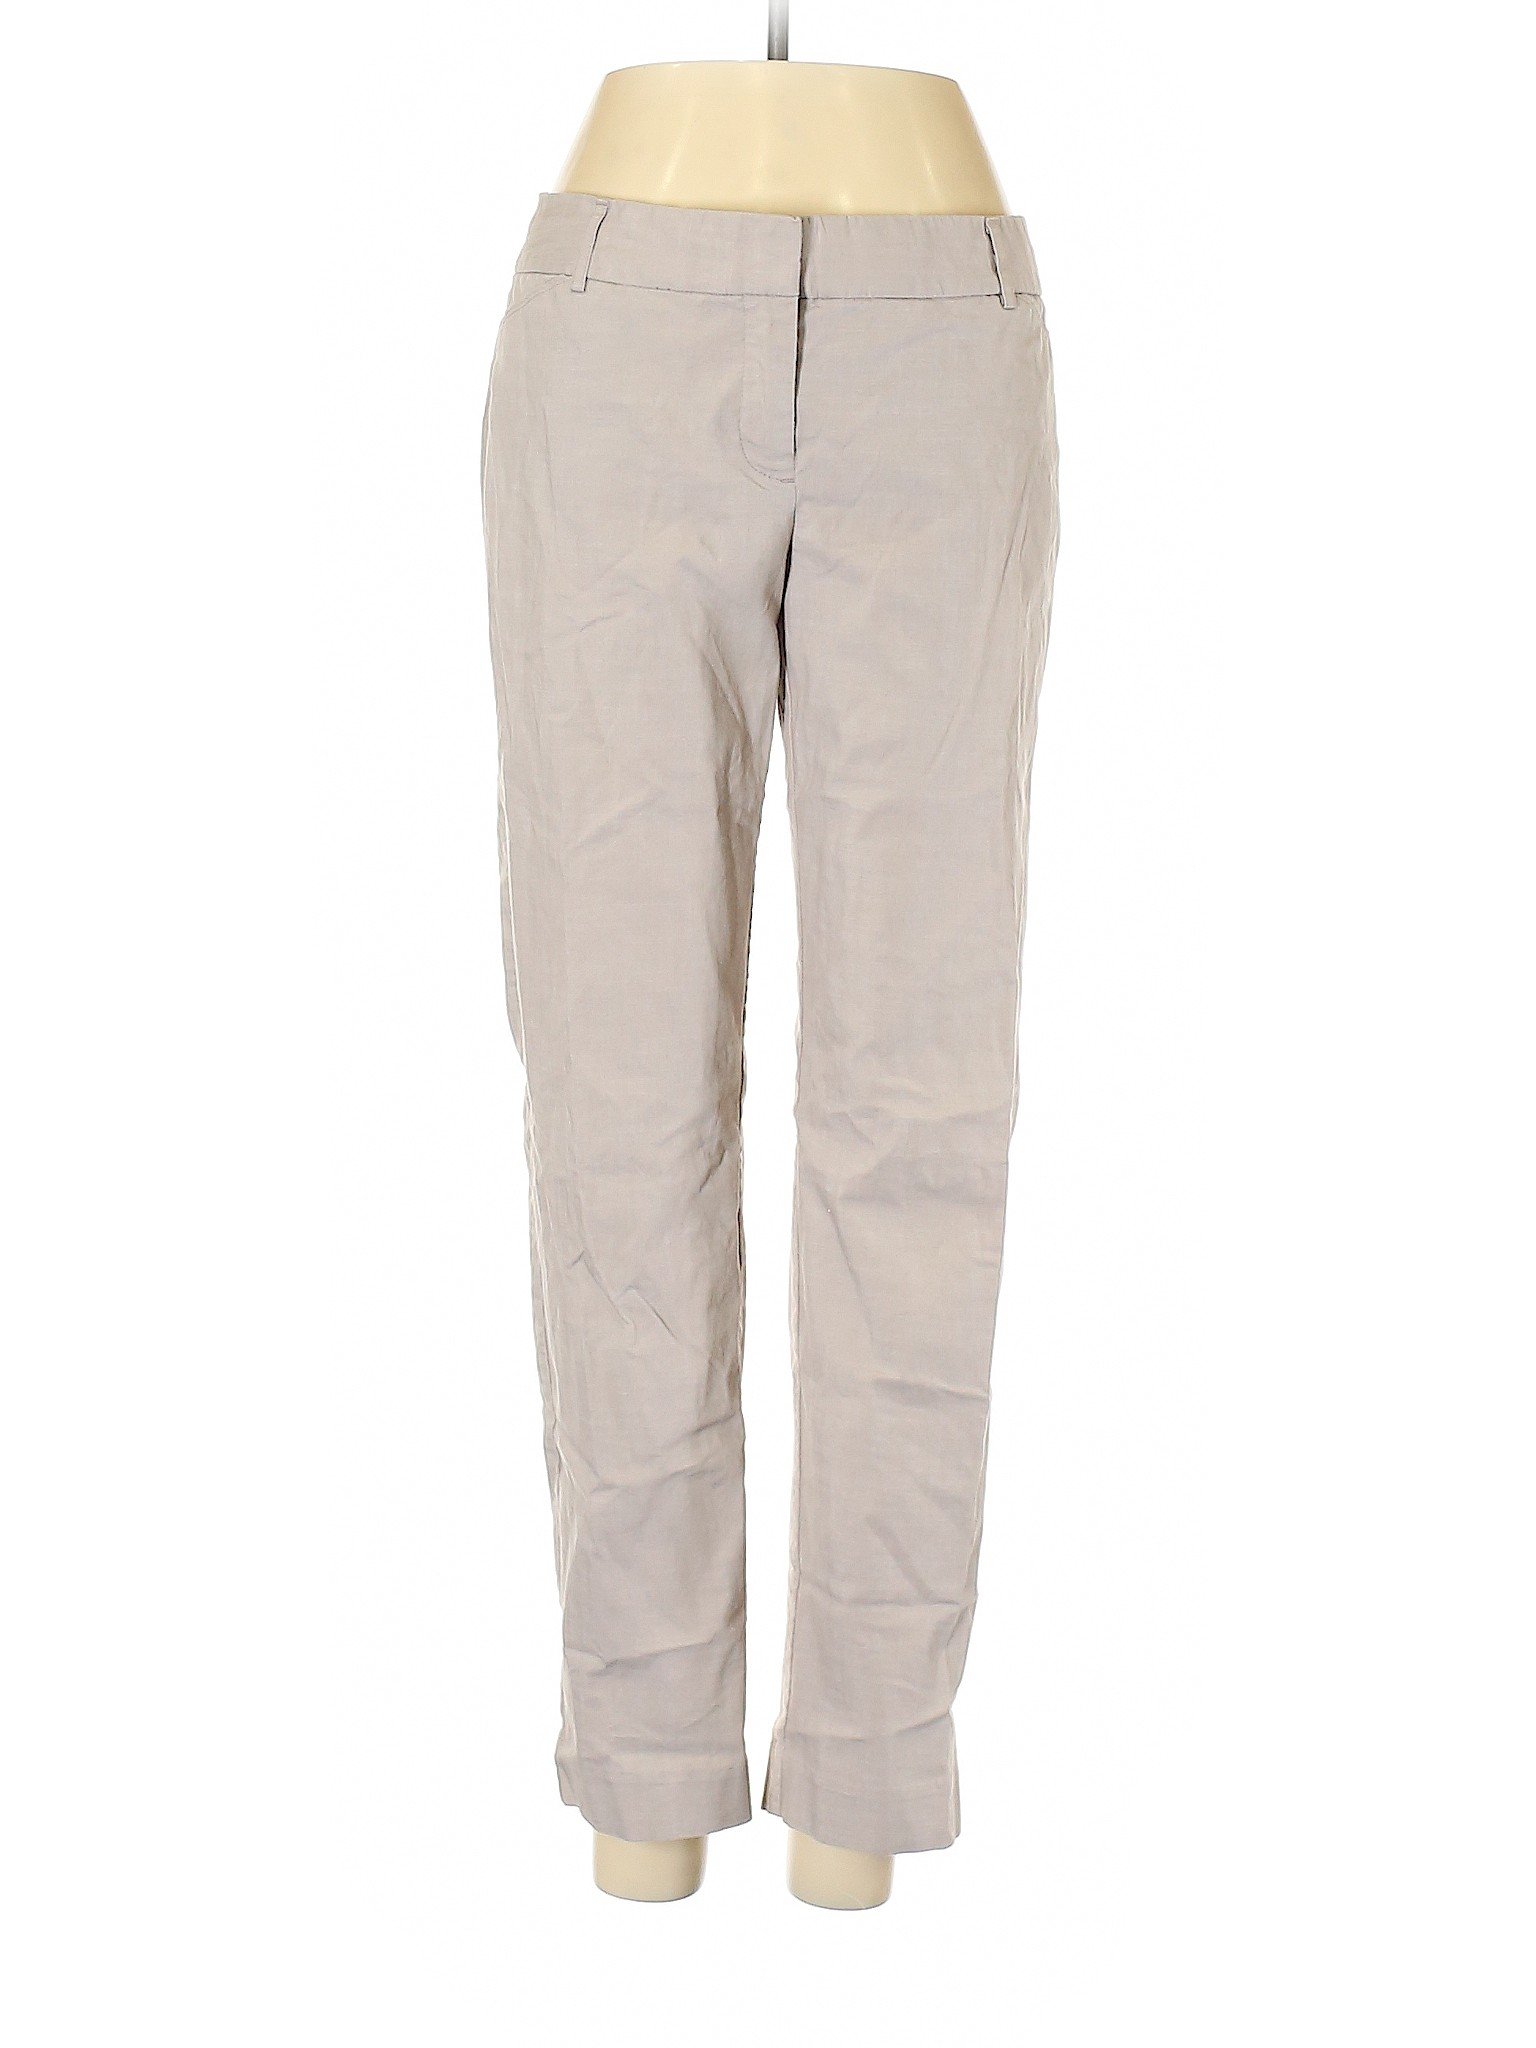 Van Heusen Women Gray Casual Pants 4 | eBay